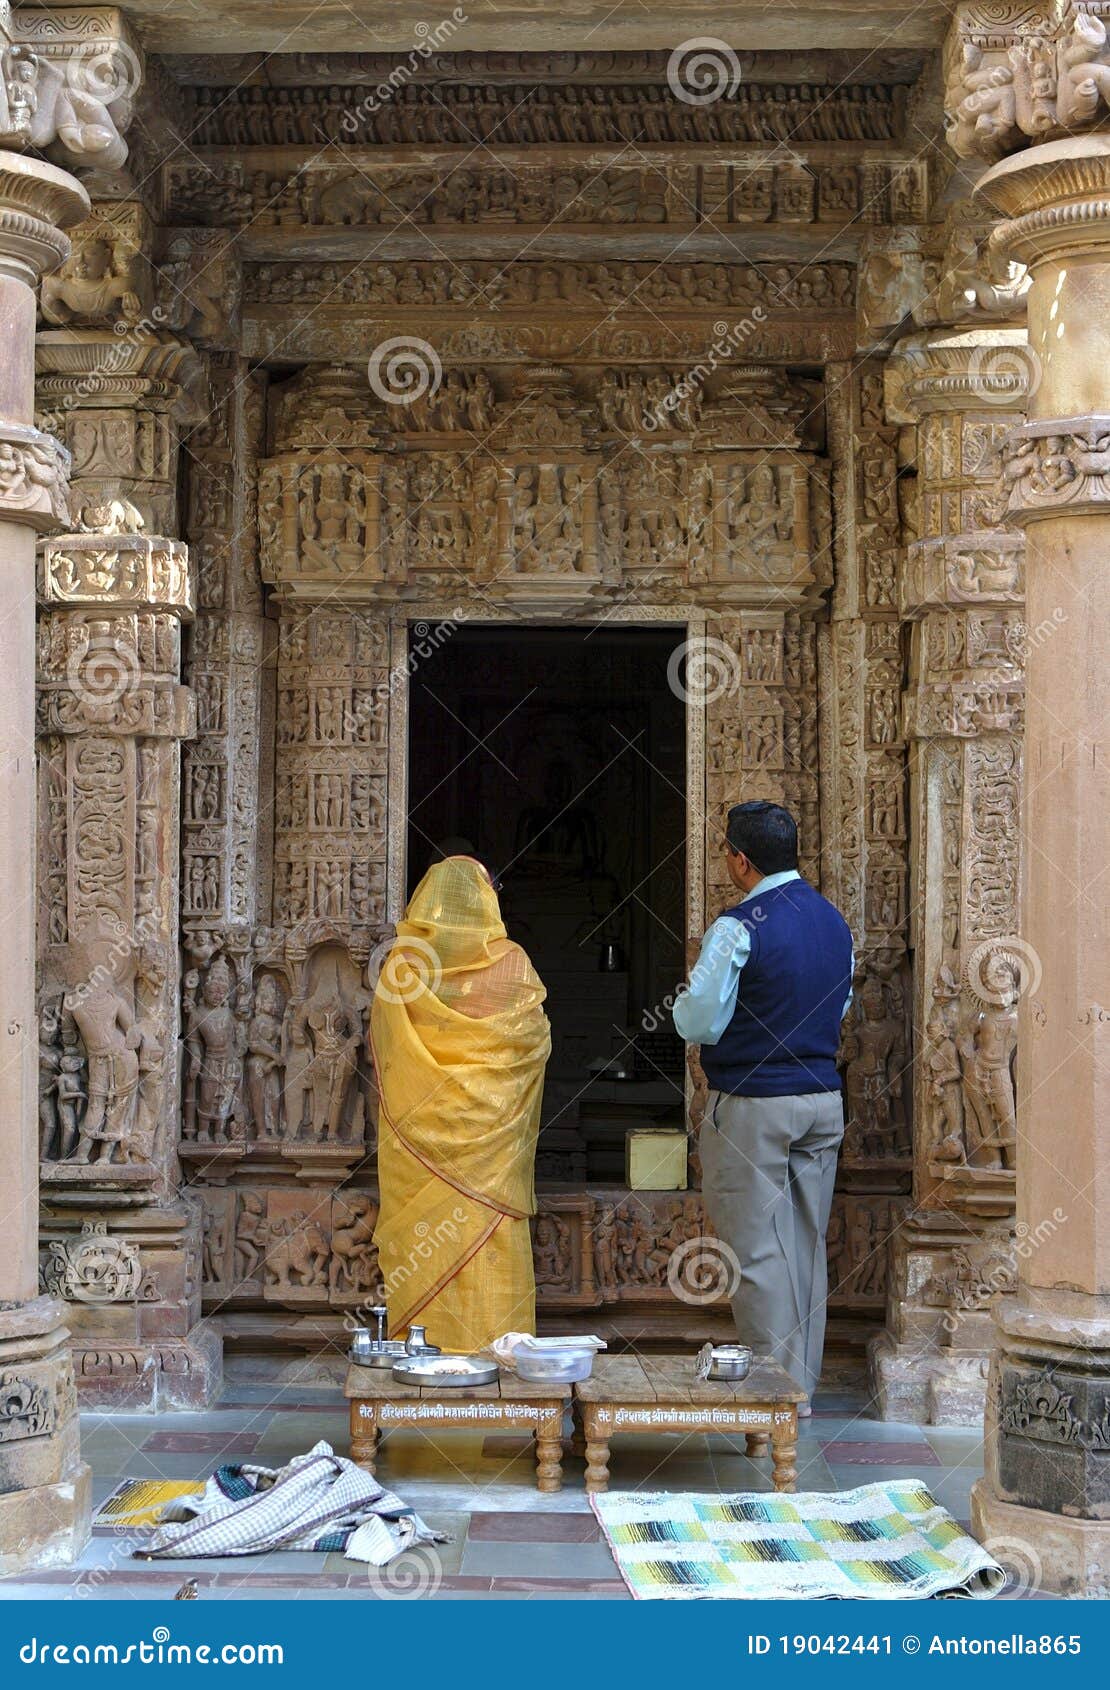 пилигримы khajuraho. группа заречья 620 назначений delhi chhatarpur эротичная известная имеет памятники madhya индусских километров khajuraho Индии индийских jain самые большие обнаруженные местонахождение средневековые большинств положения новой виски одного популярной скульптуры pradesh юговосточые их туристский городок